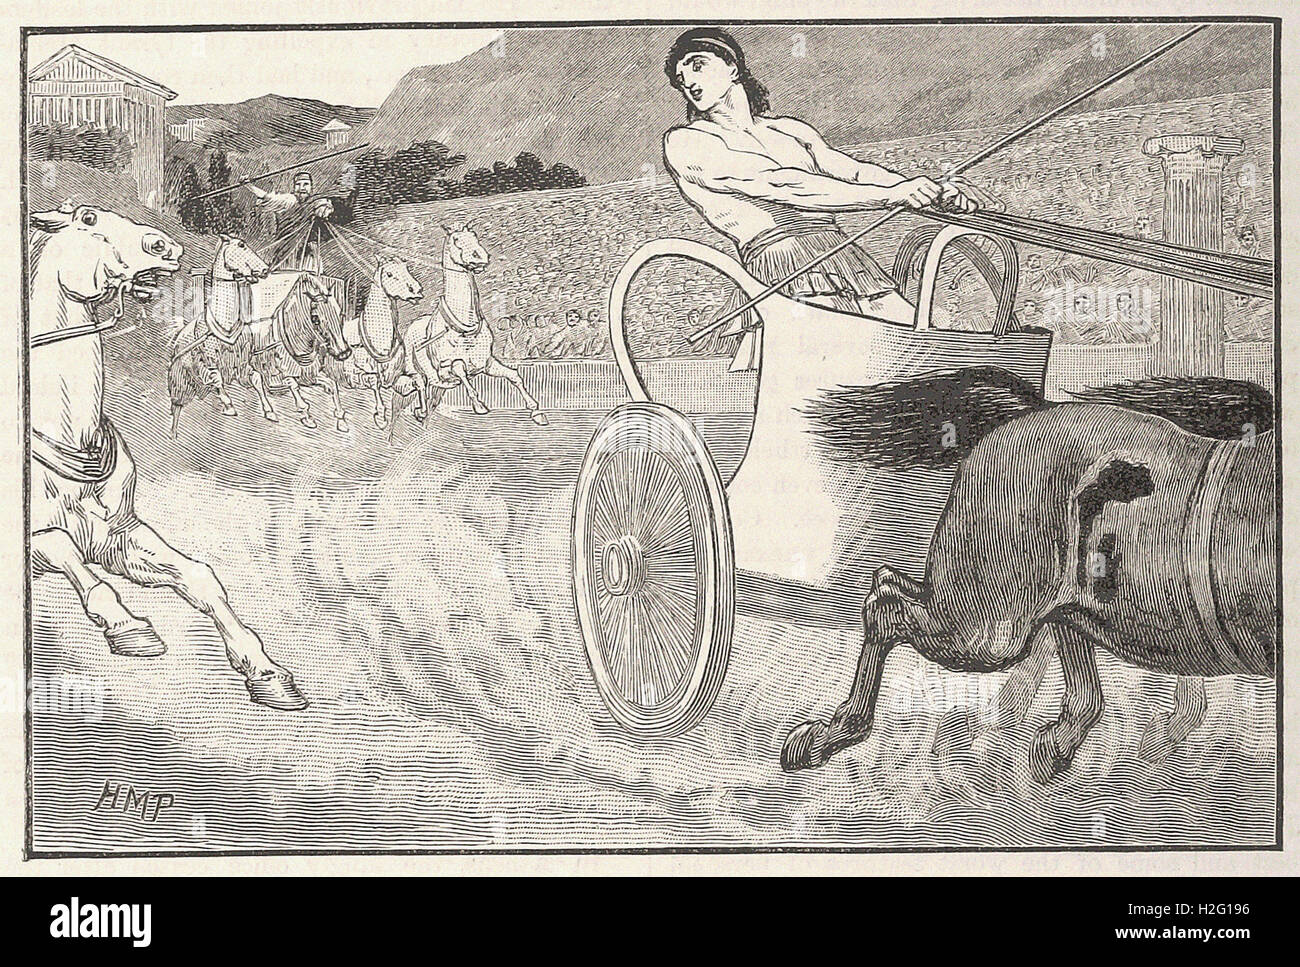 CLISTHENES EN LOS JUEGOS OLÍMPICOS - desde 'Cassell's ilustra la historia universal' - 1882 Foto de stock